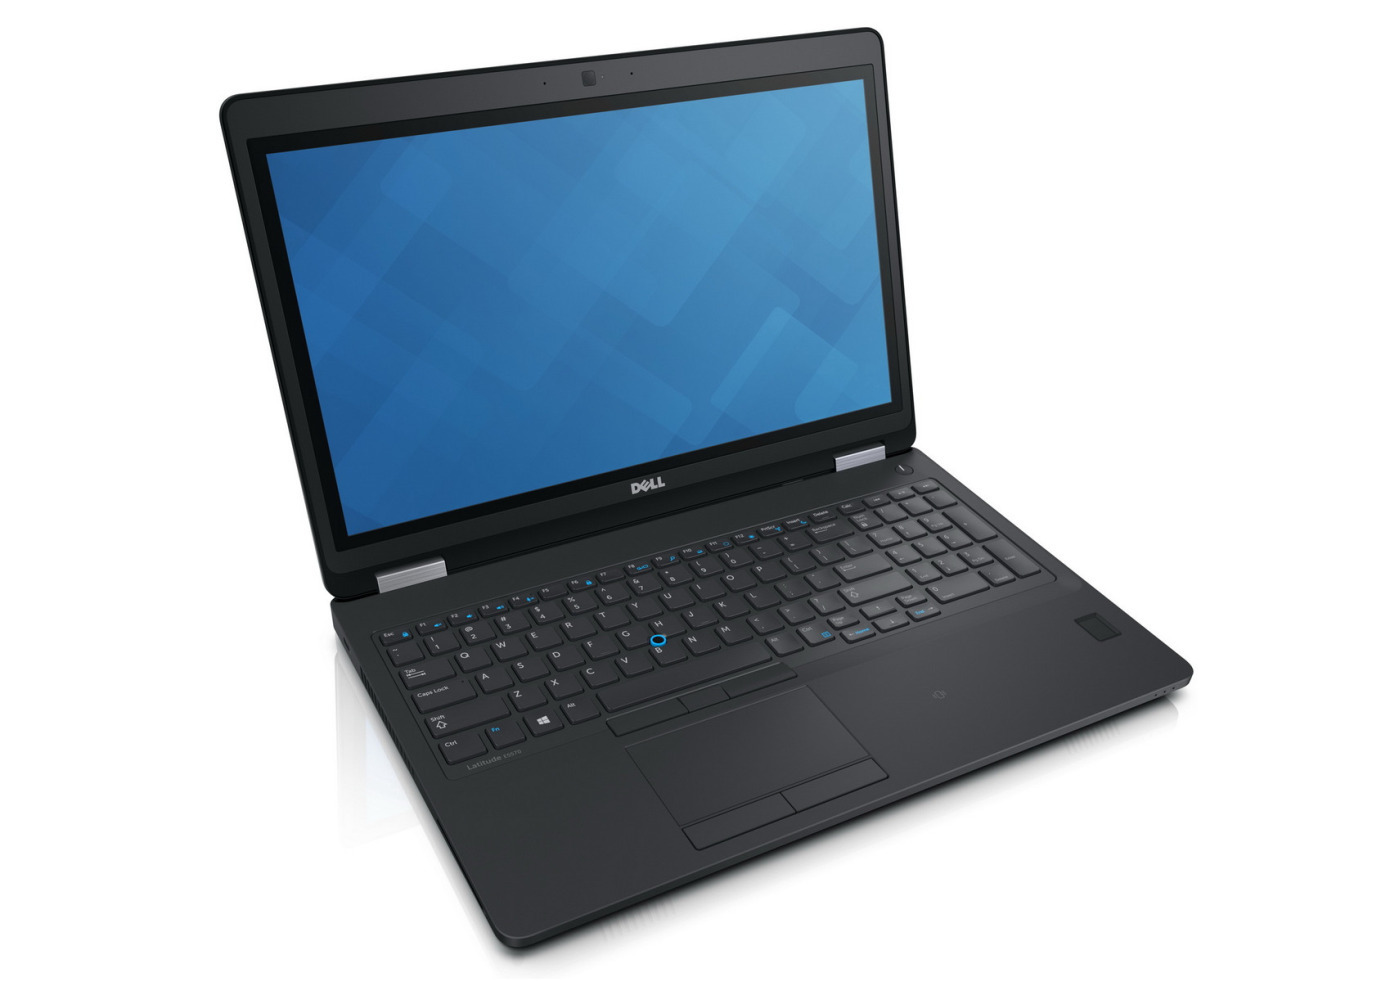 Dell Latitude E5570 Intel i5 6300U 2.40GHz 8GB RAM 256GB SSD 15.6" Win 10 - B Grade Image 3